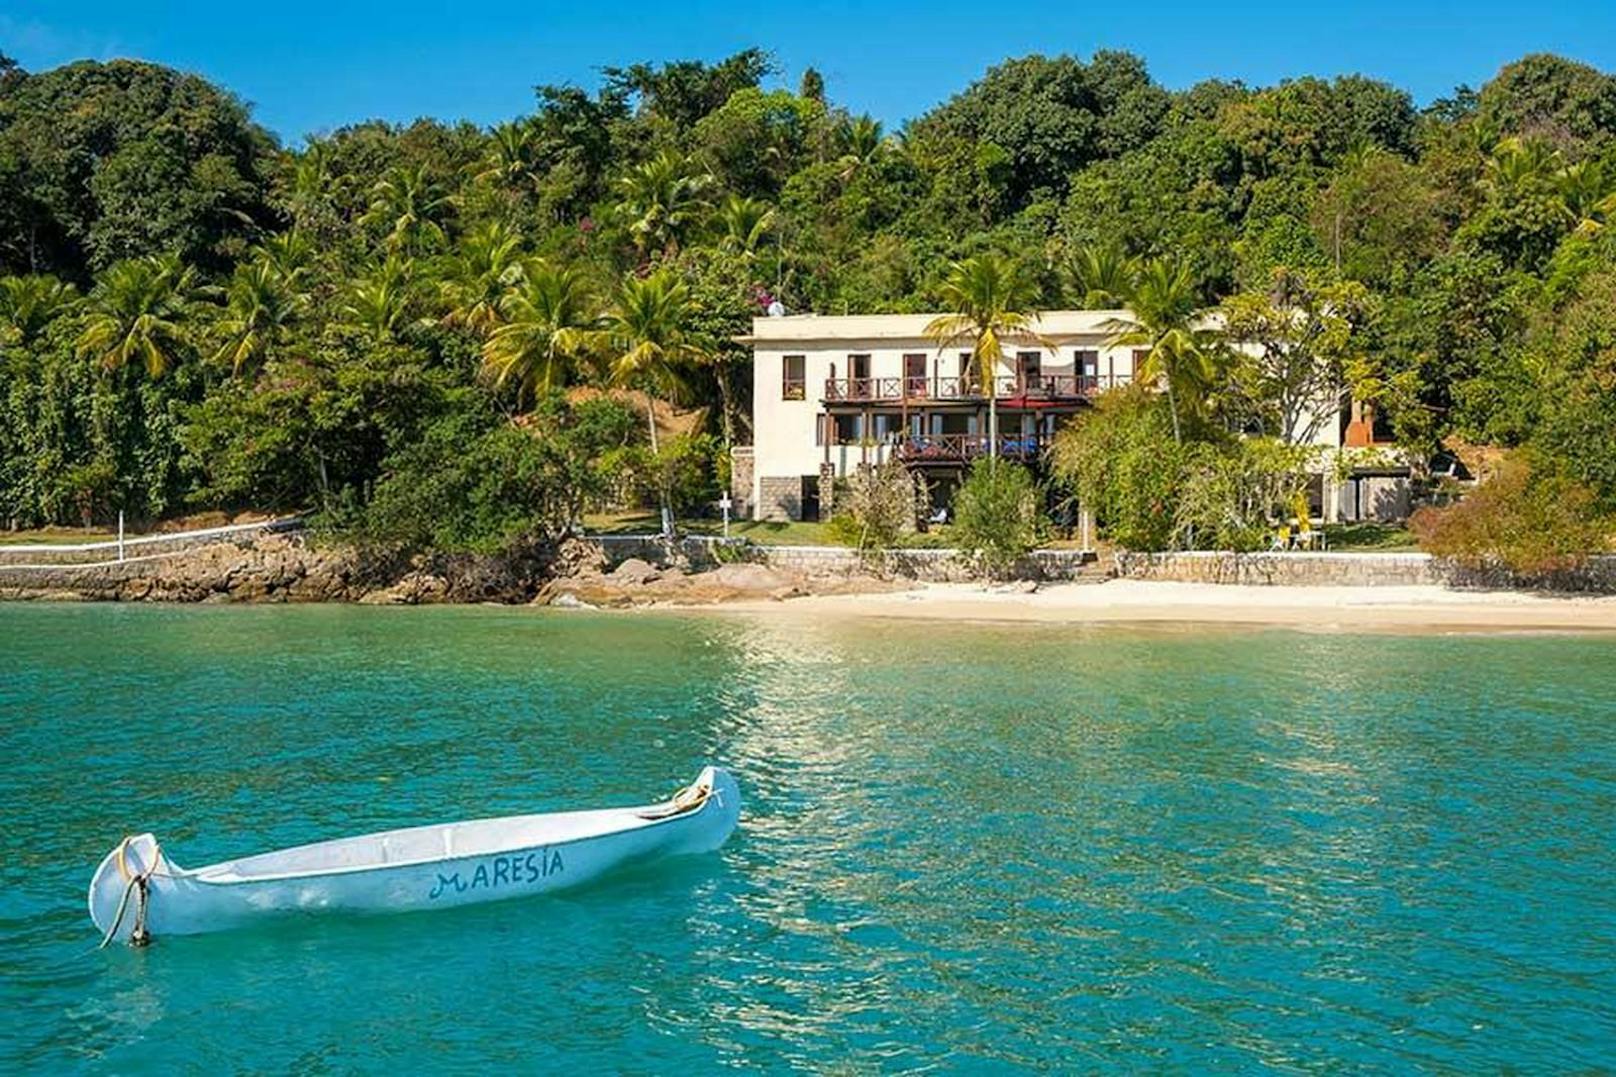 Ola Brasil! Dieses herzige Haus steht auf Paraty Island, einer Insel vor Brasilien.